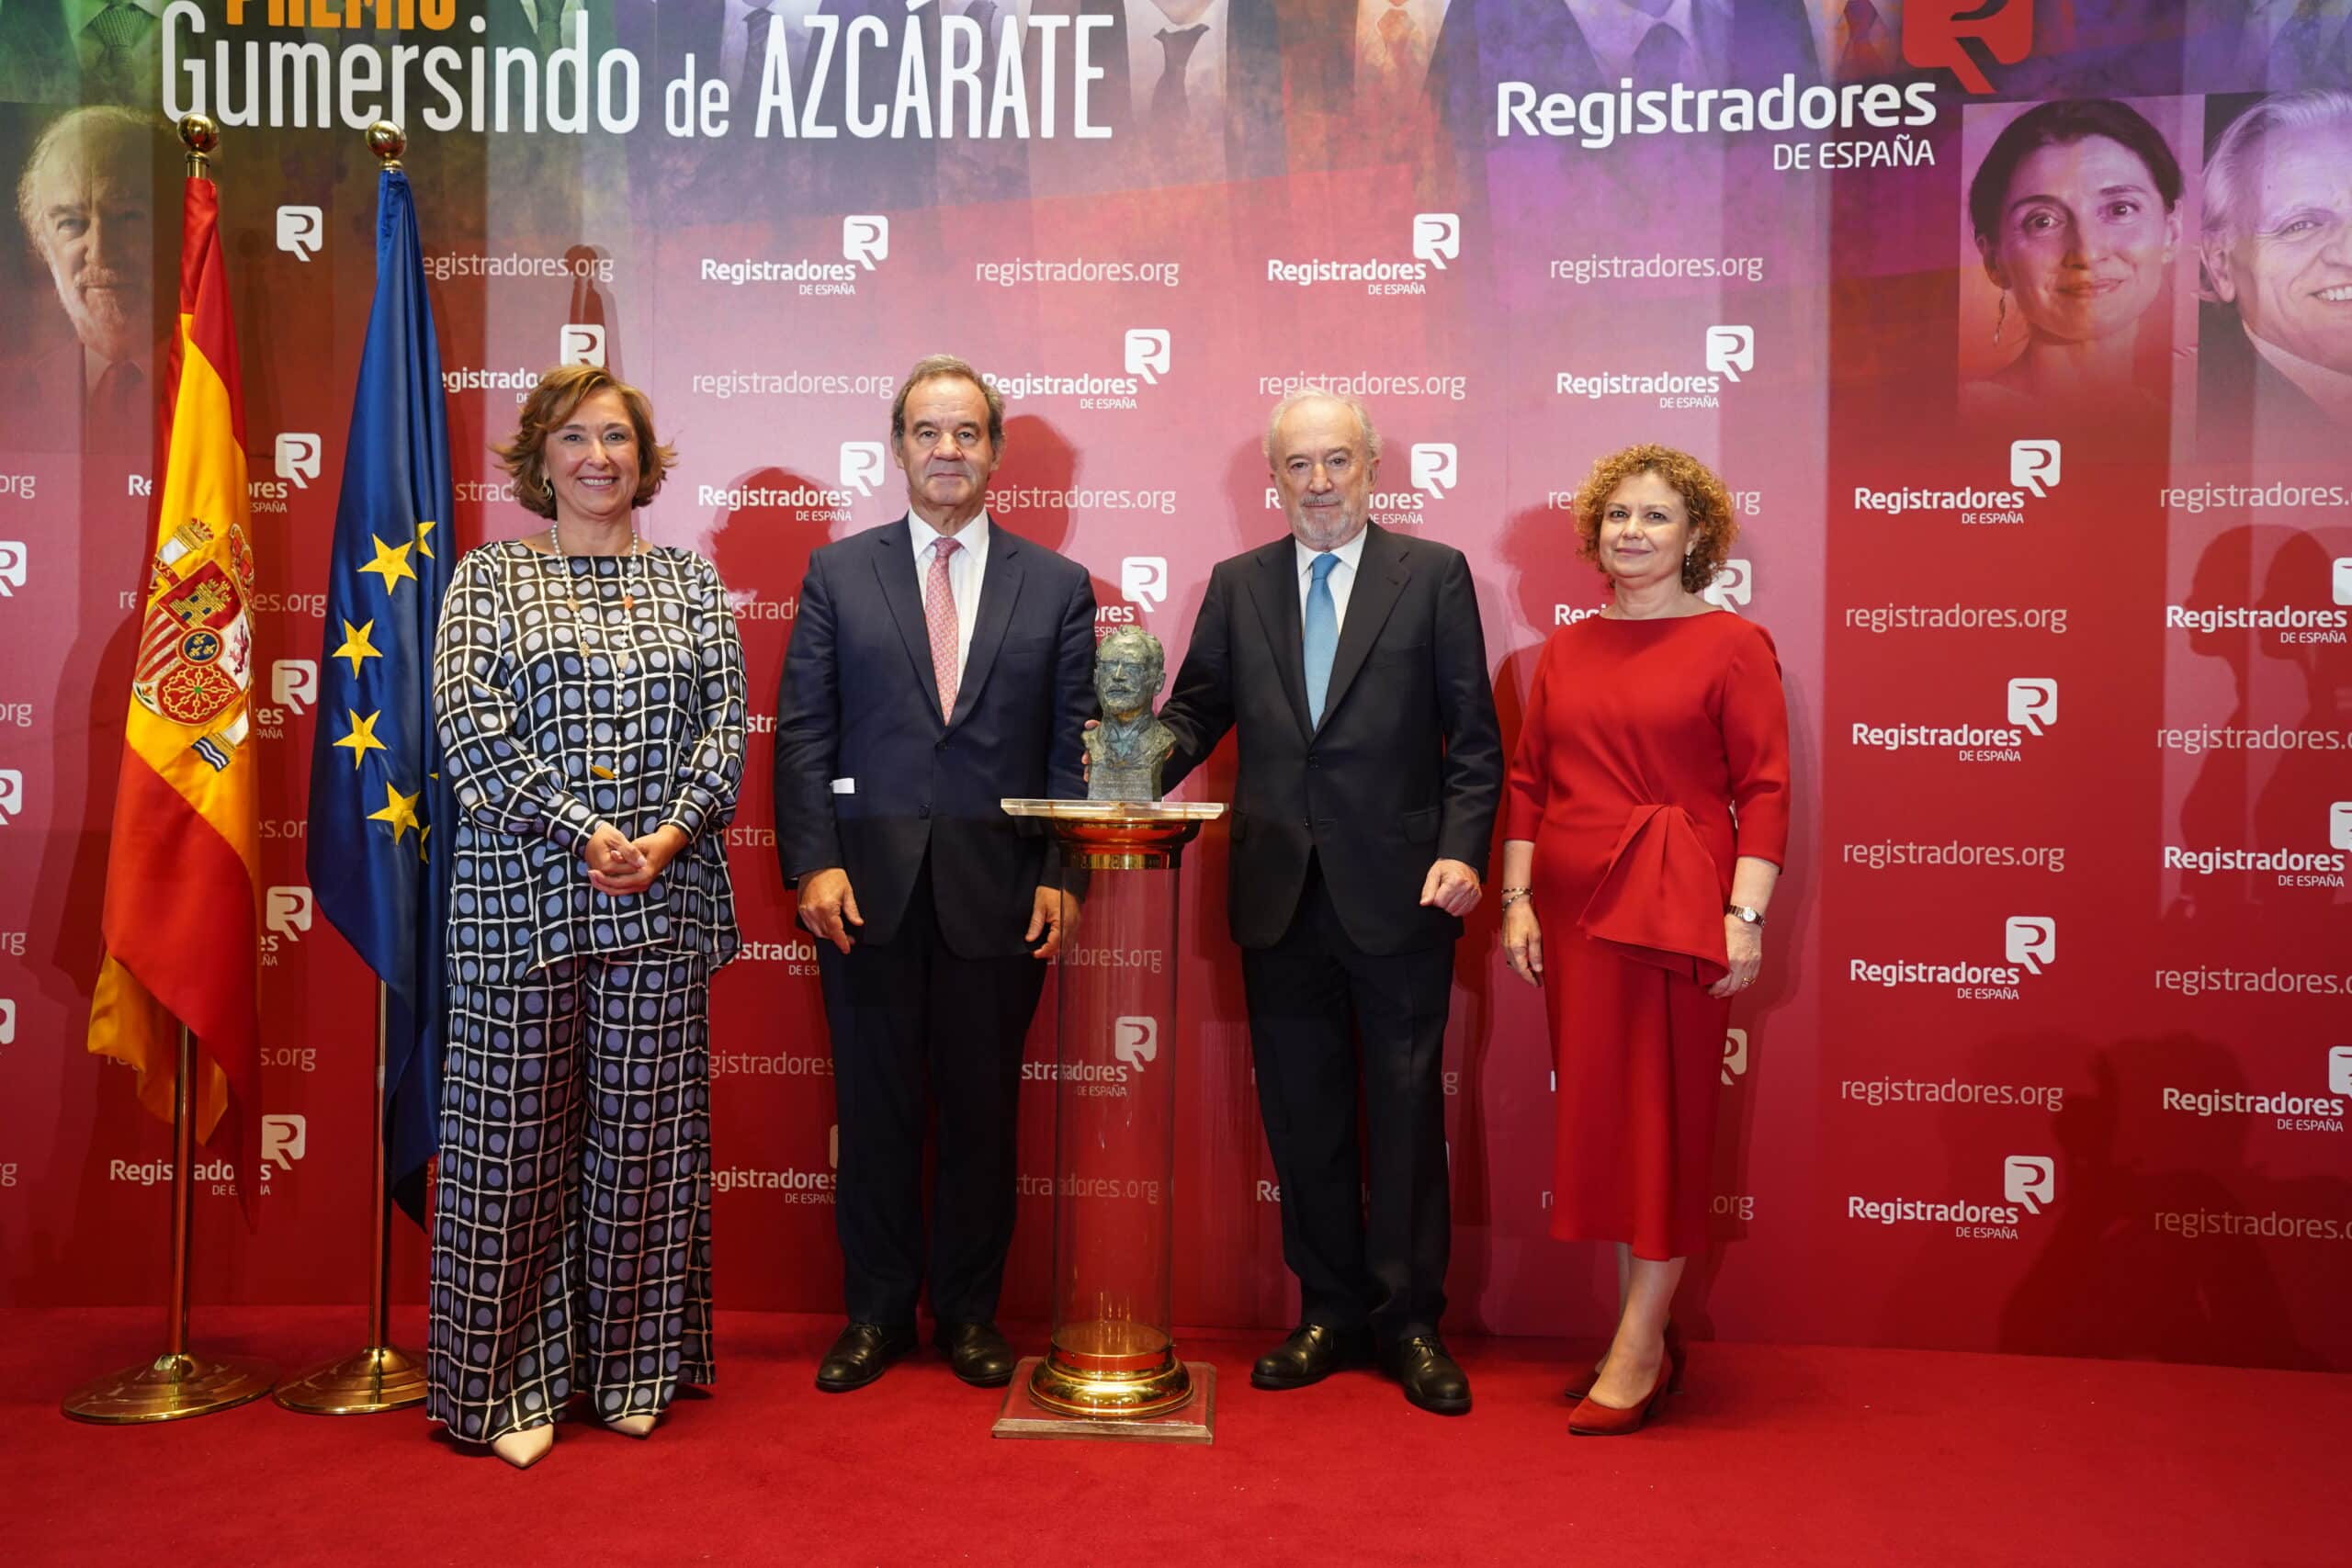 La Real Academia de la Lengua Española recibe el premio Gumersindo de Azcárate en su XIII Edición